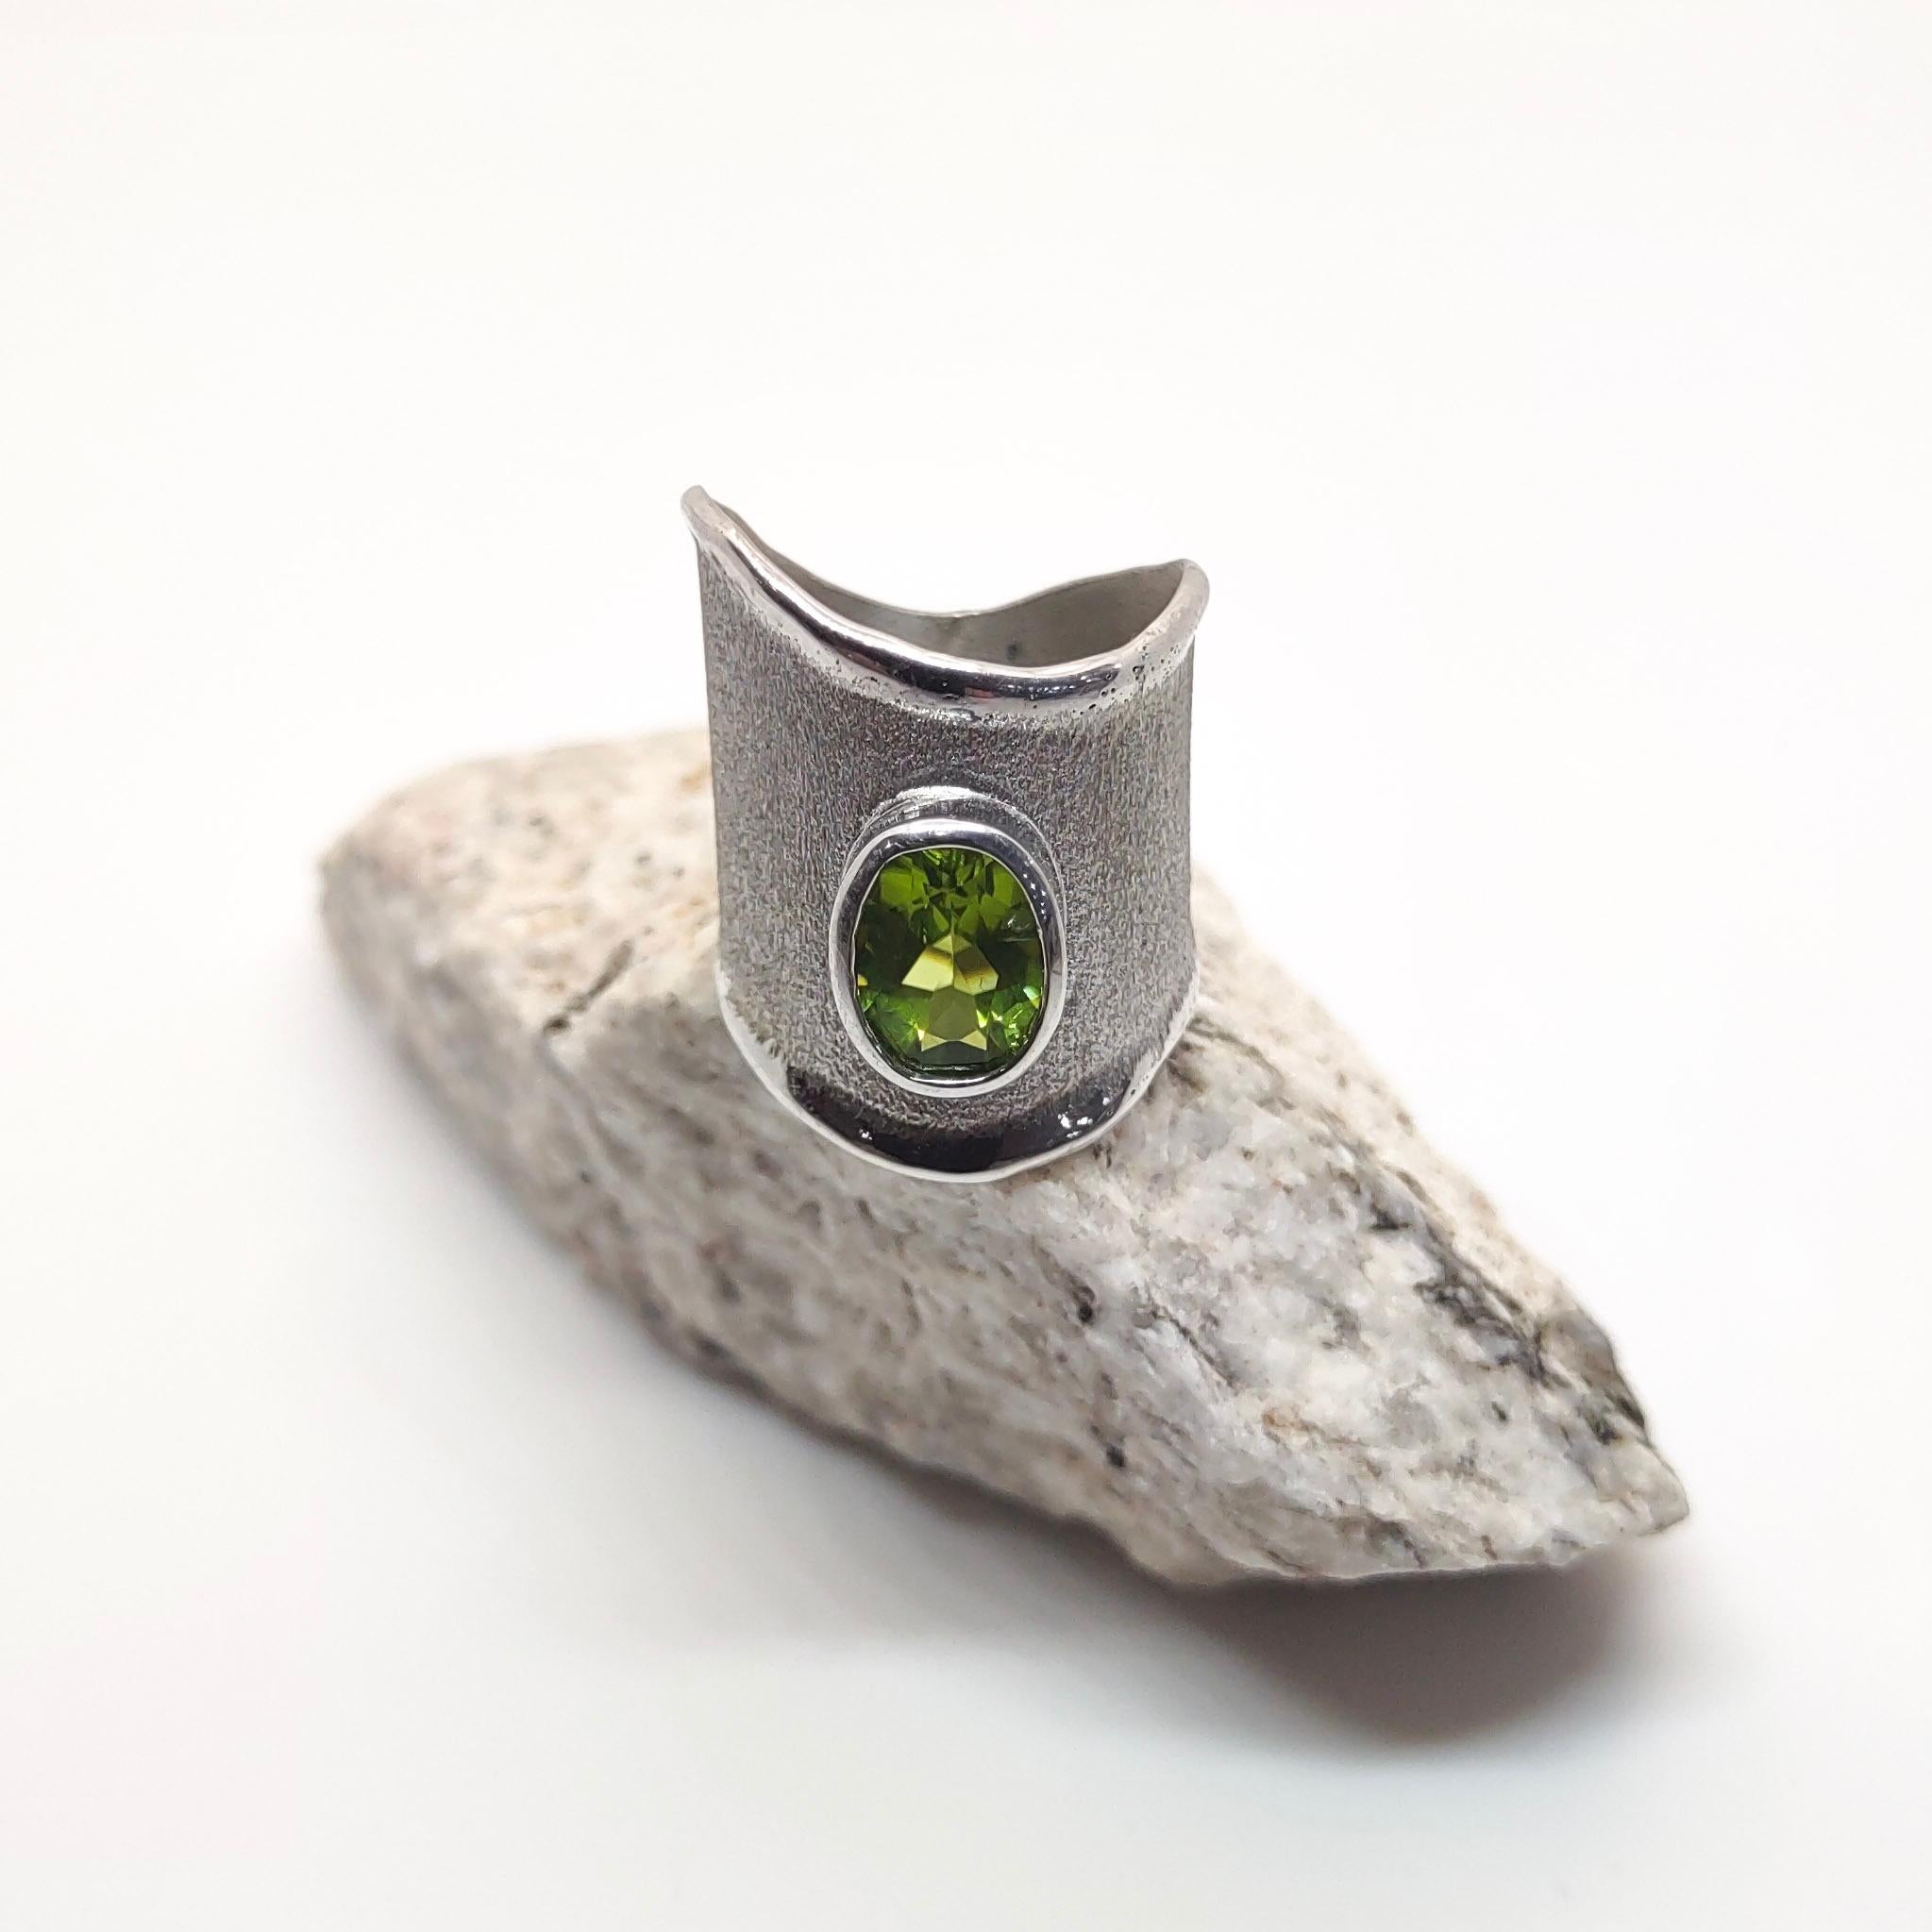 Yianni Creations Ammos Kollektion 100 % handgefertigter Ring aus feinem Silber mit 2,00 Karat Peridot, ergänzt durch einzigartige Handwerkstechniken - gebürstete Textur und von der Natur inspirierte flüssige Kanten. Der Kern dieses schönen